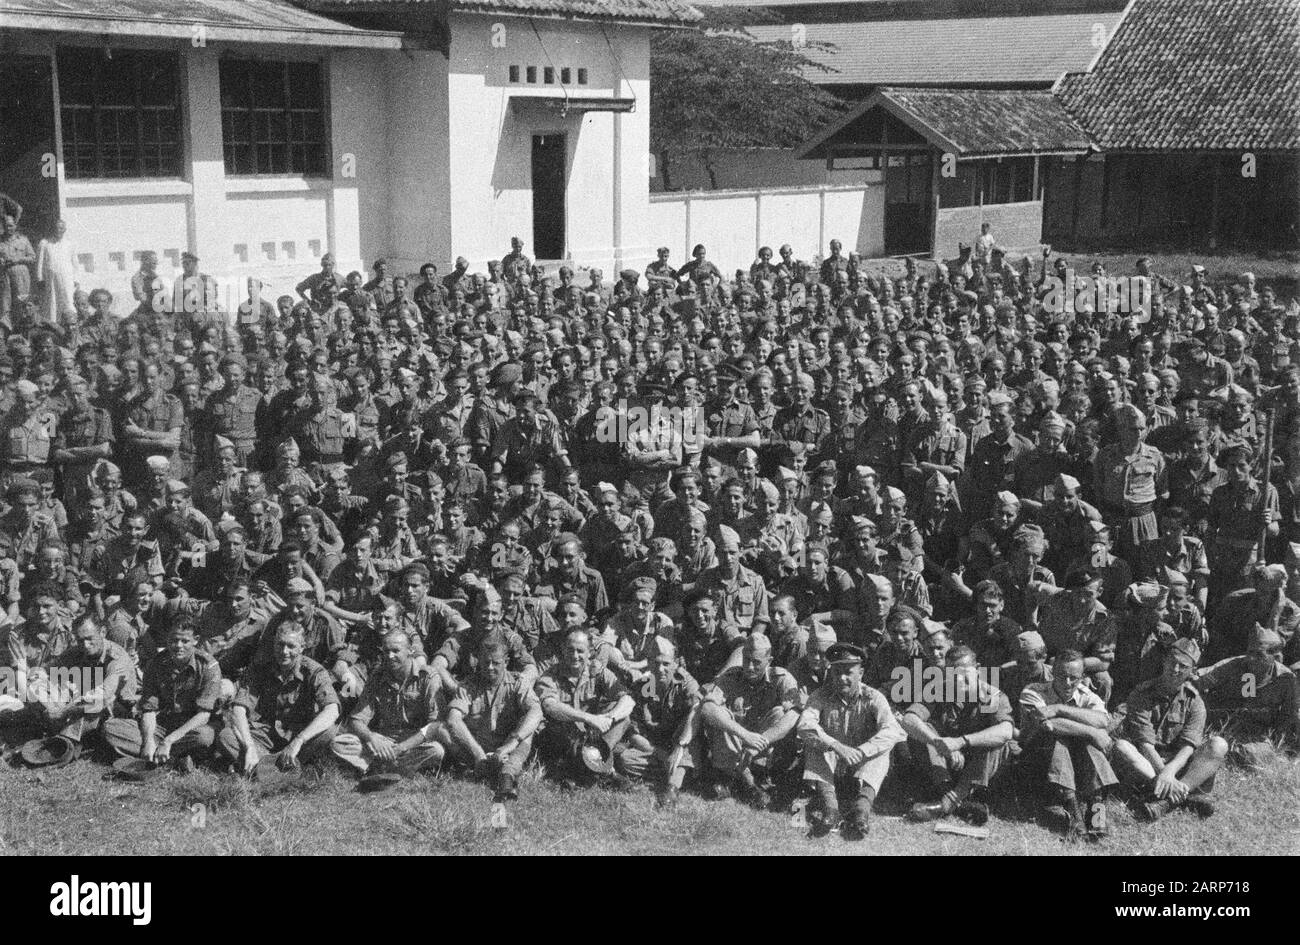 Gruppo molto grande di militanti olandesi che guardano una performance o ascoltano un discorso Data: 1947/01/01 luogo: Indonesia, Indie orientali olandesi : Unknown/DLC Foto Stock